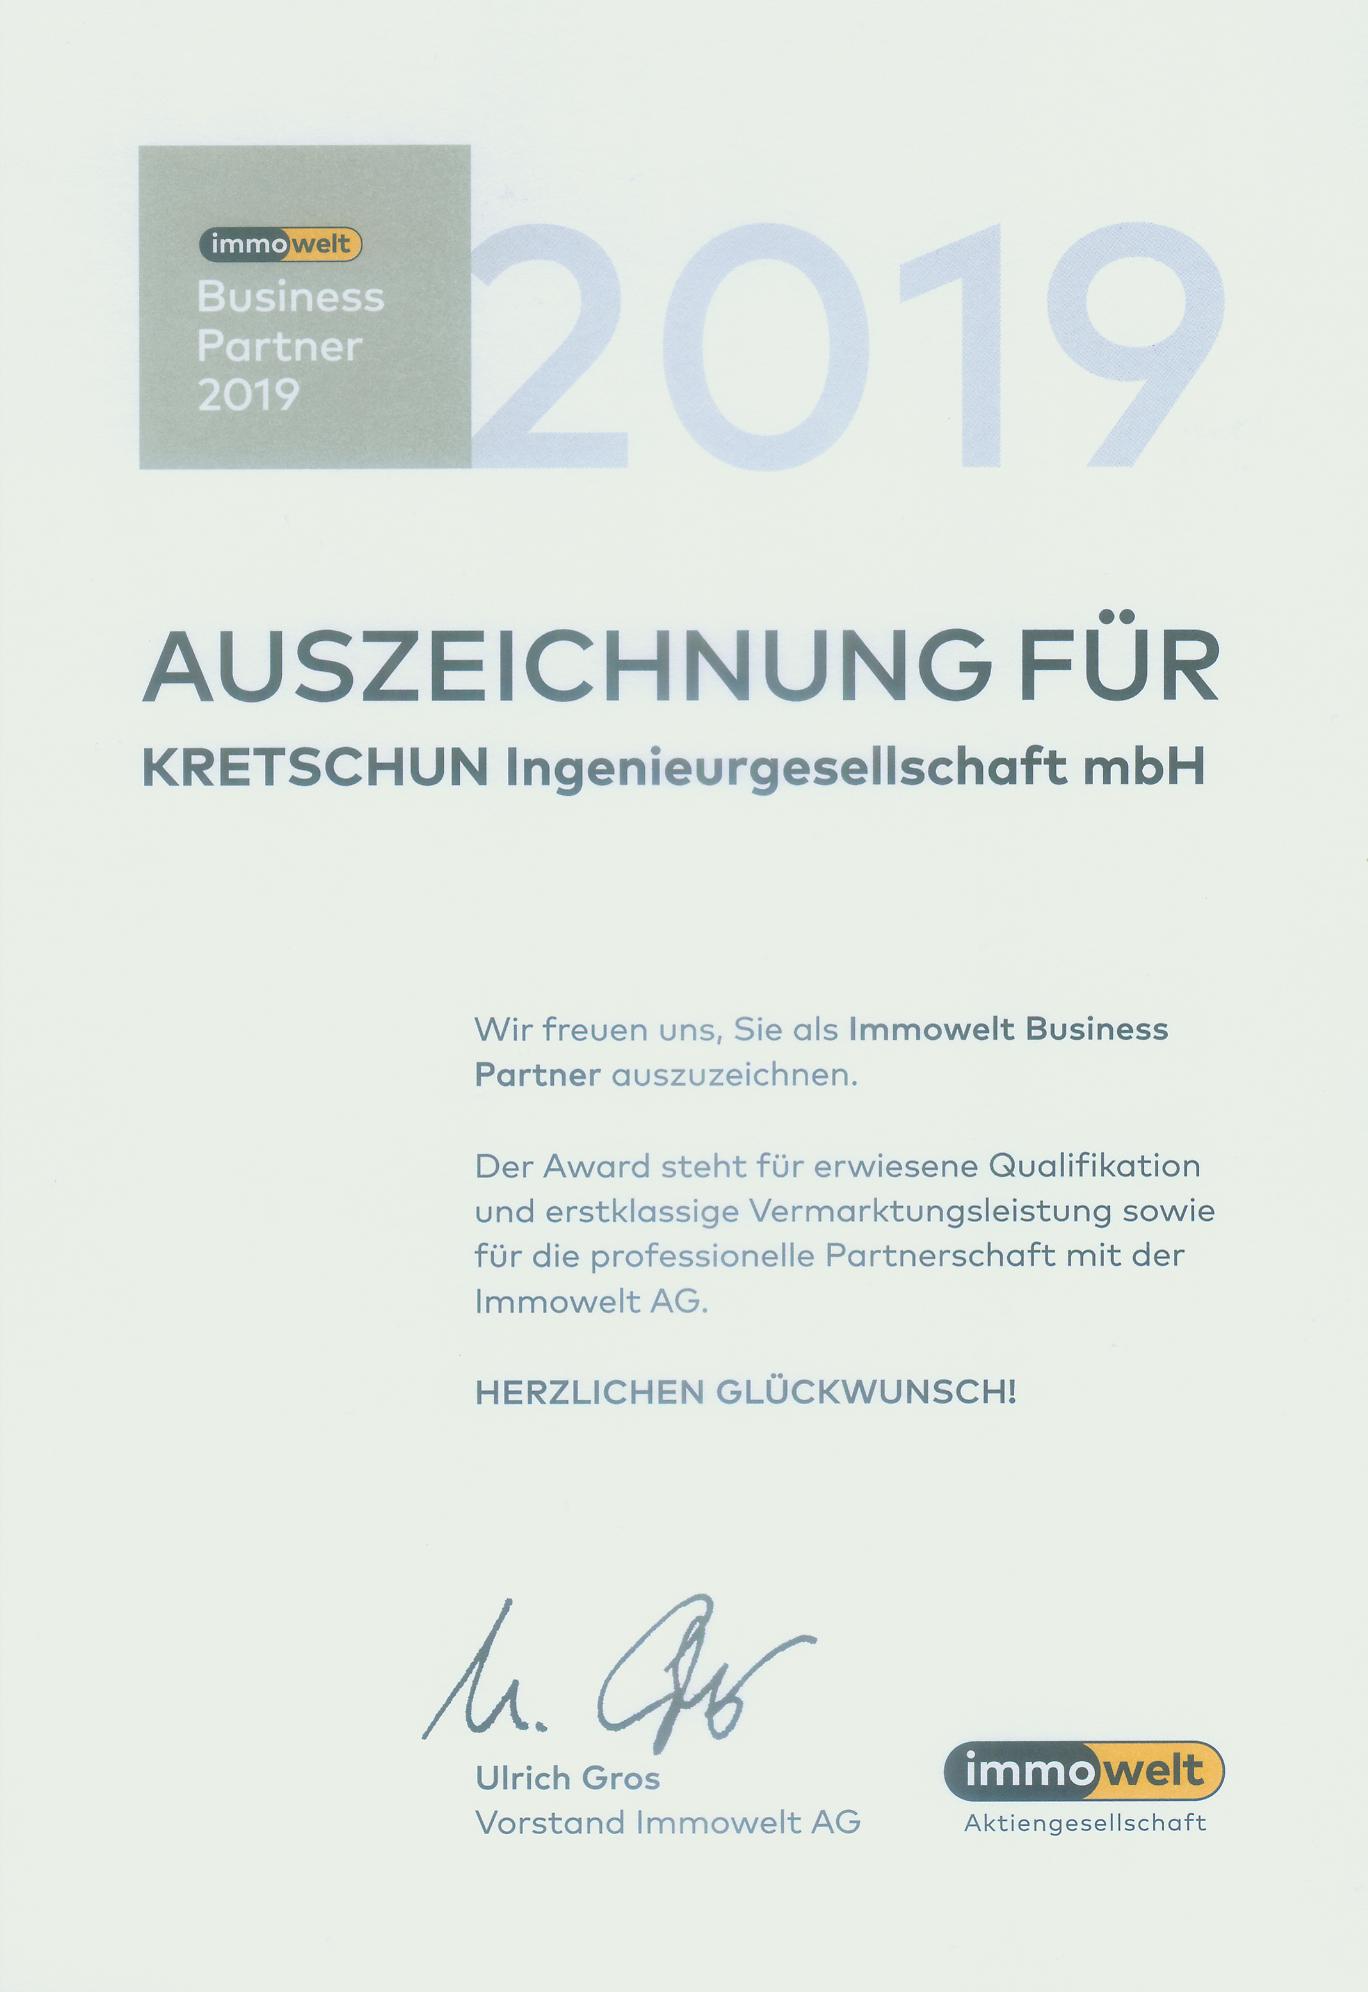 immowelt Business Partner 2019 - Auszeichnung